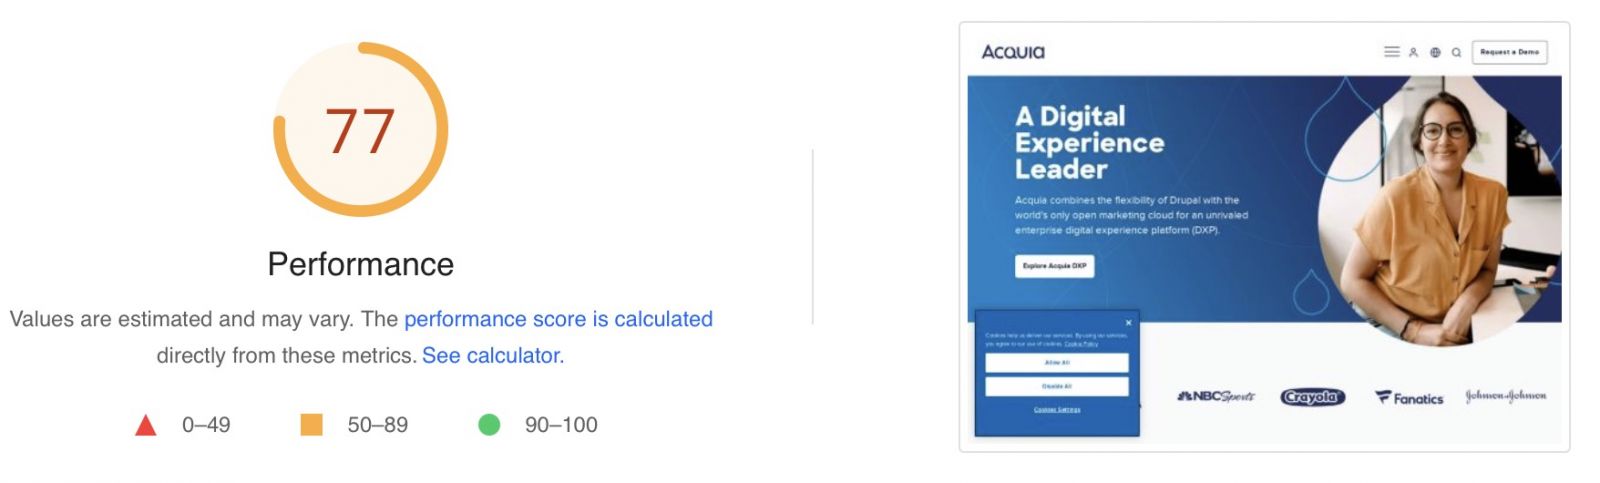 Acquia.com Speedtest Results